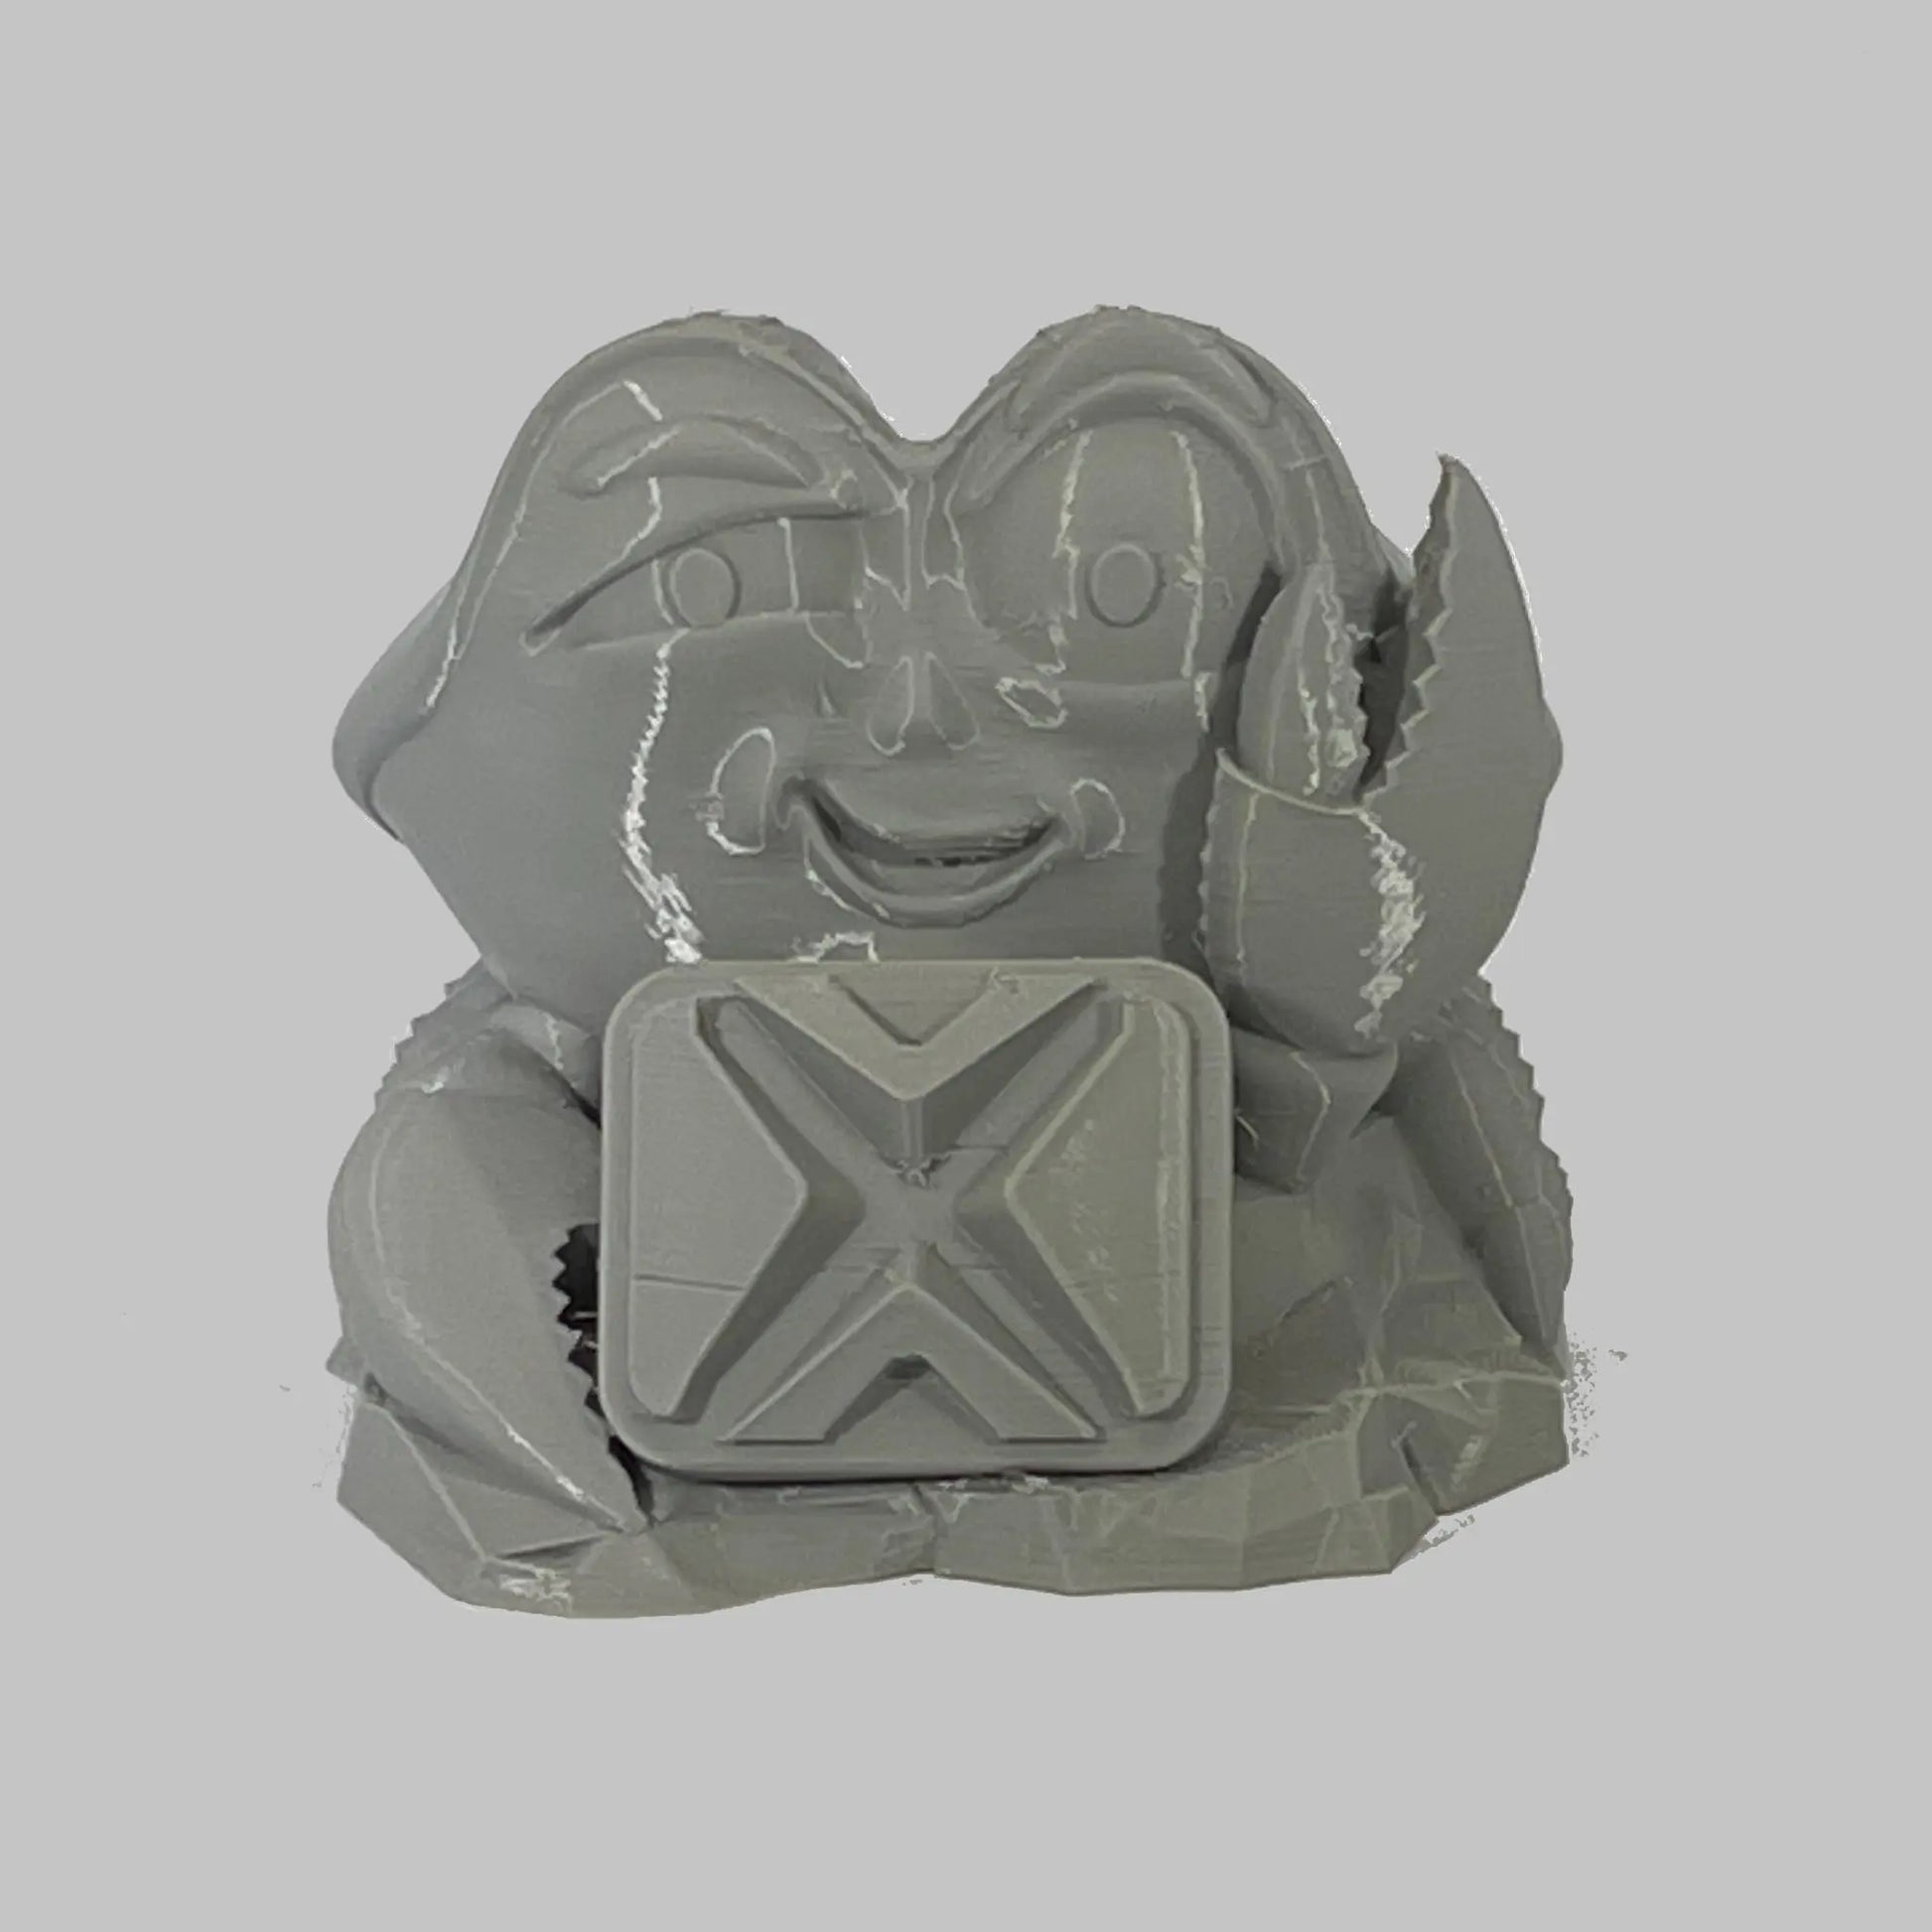 Stone Gray ASA Prime COEX 3D